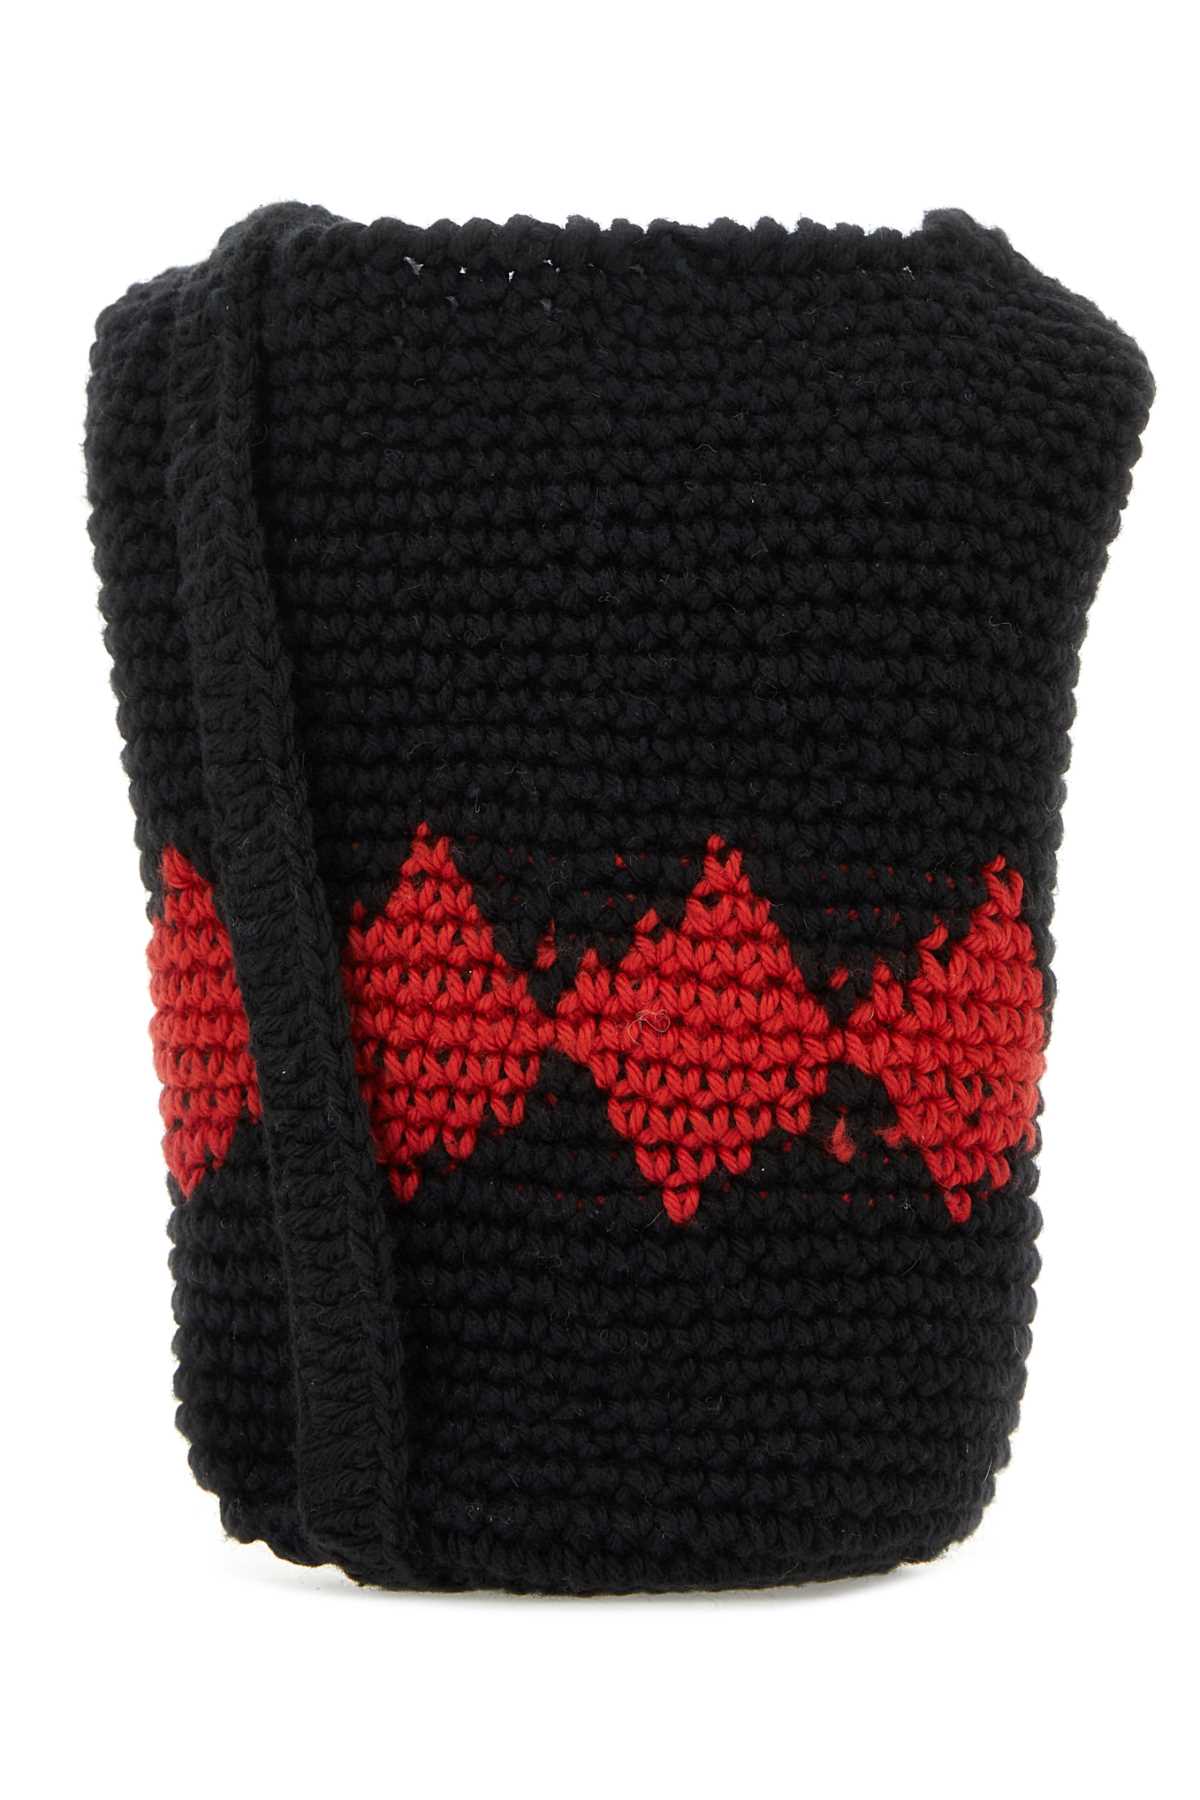 Gimaguas Black Crochet Rombo Crossbody Bag